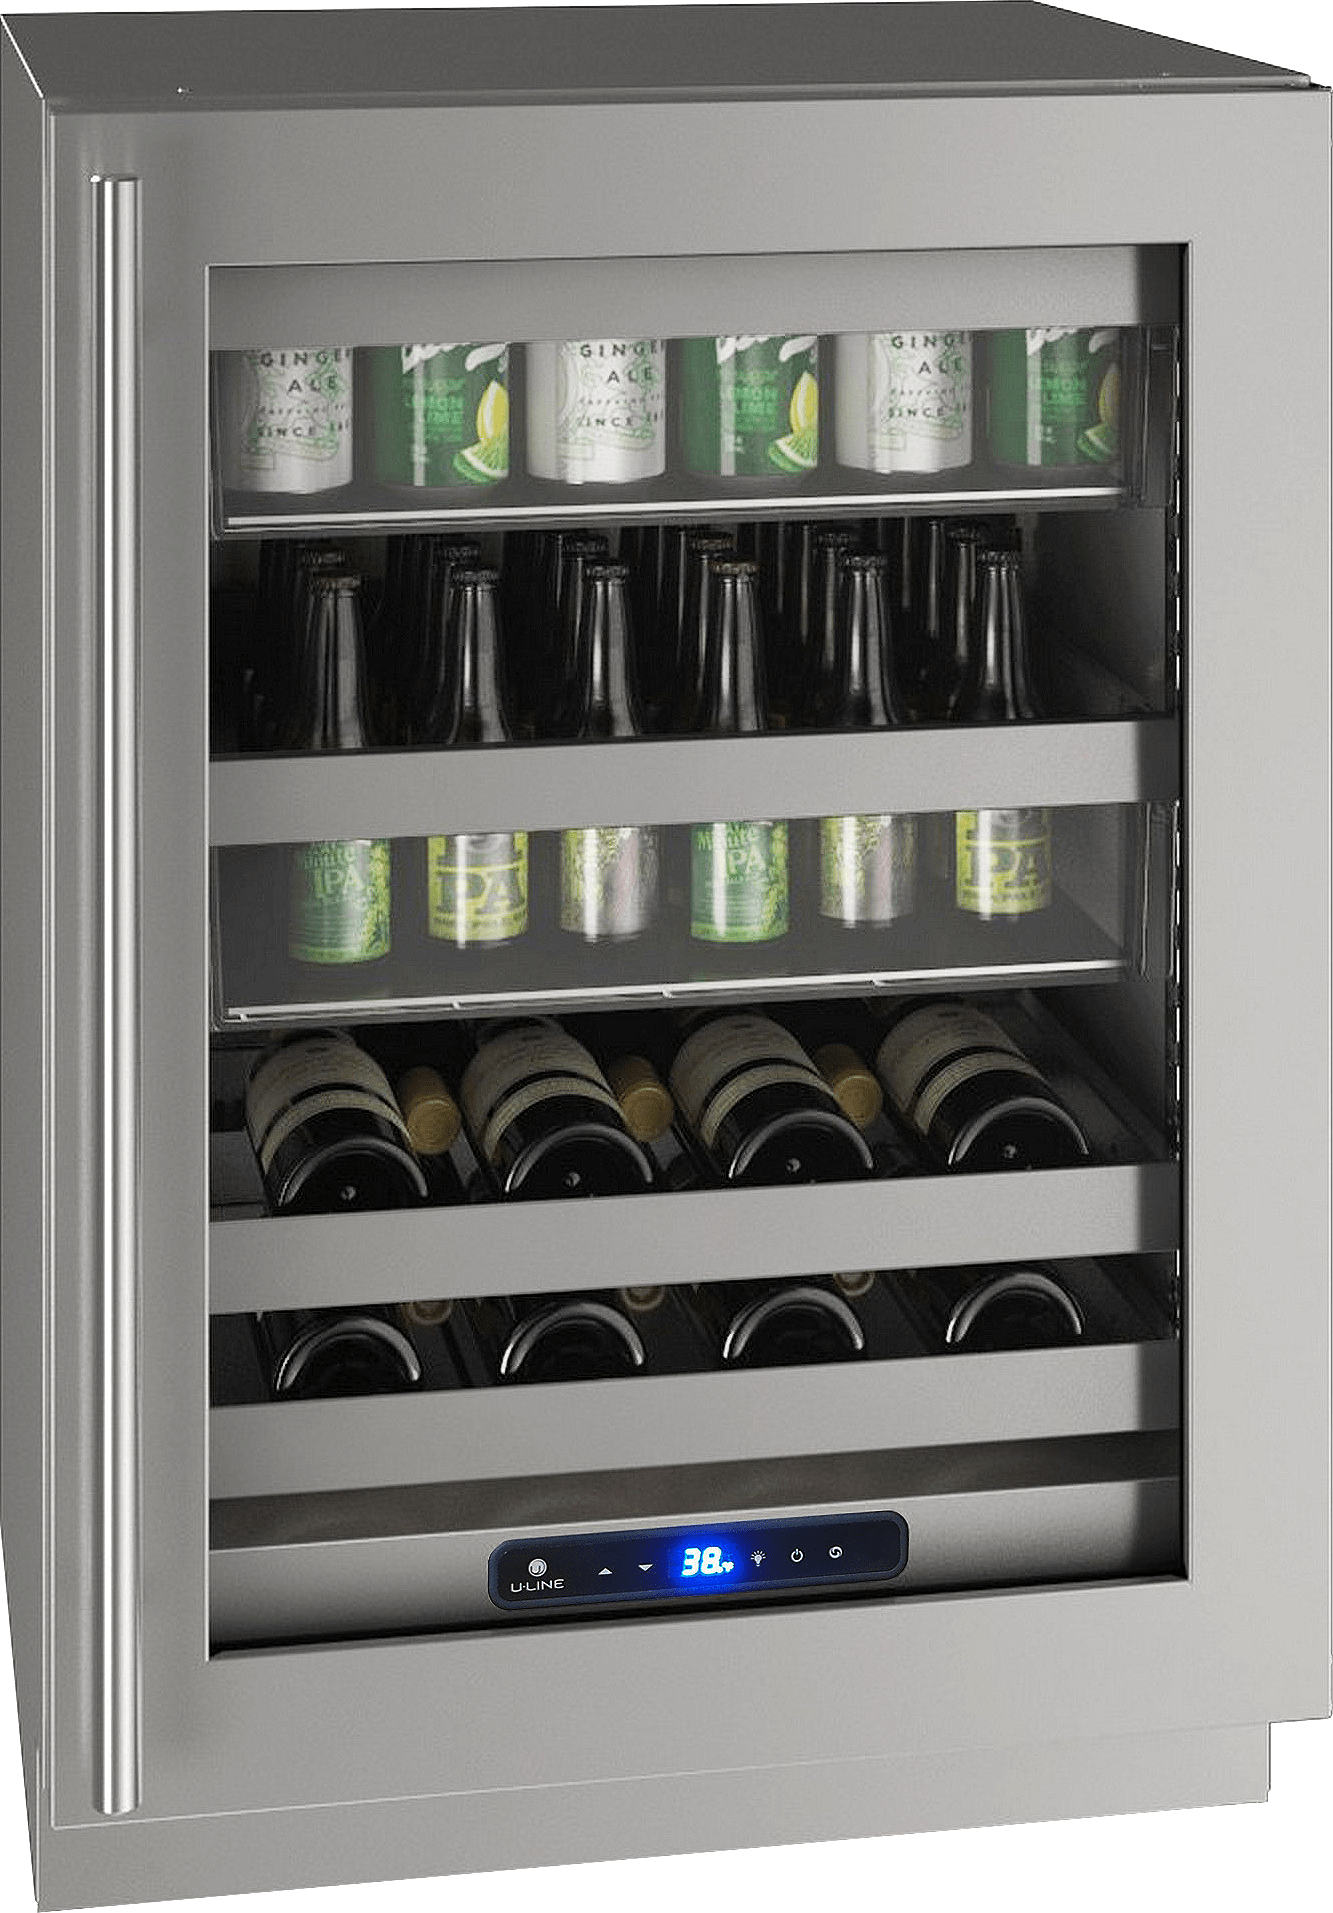 U-Line HBV524 24" Beverage Center Reversible Hinge Integrated Frame Beverage Centers UHBV524-SG41A Luxury Appliances Direct